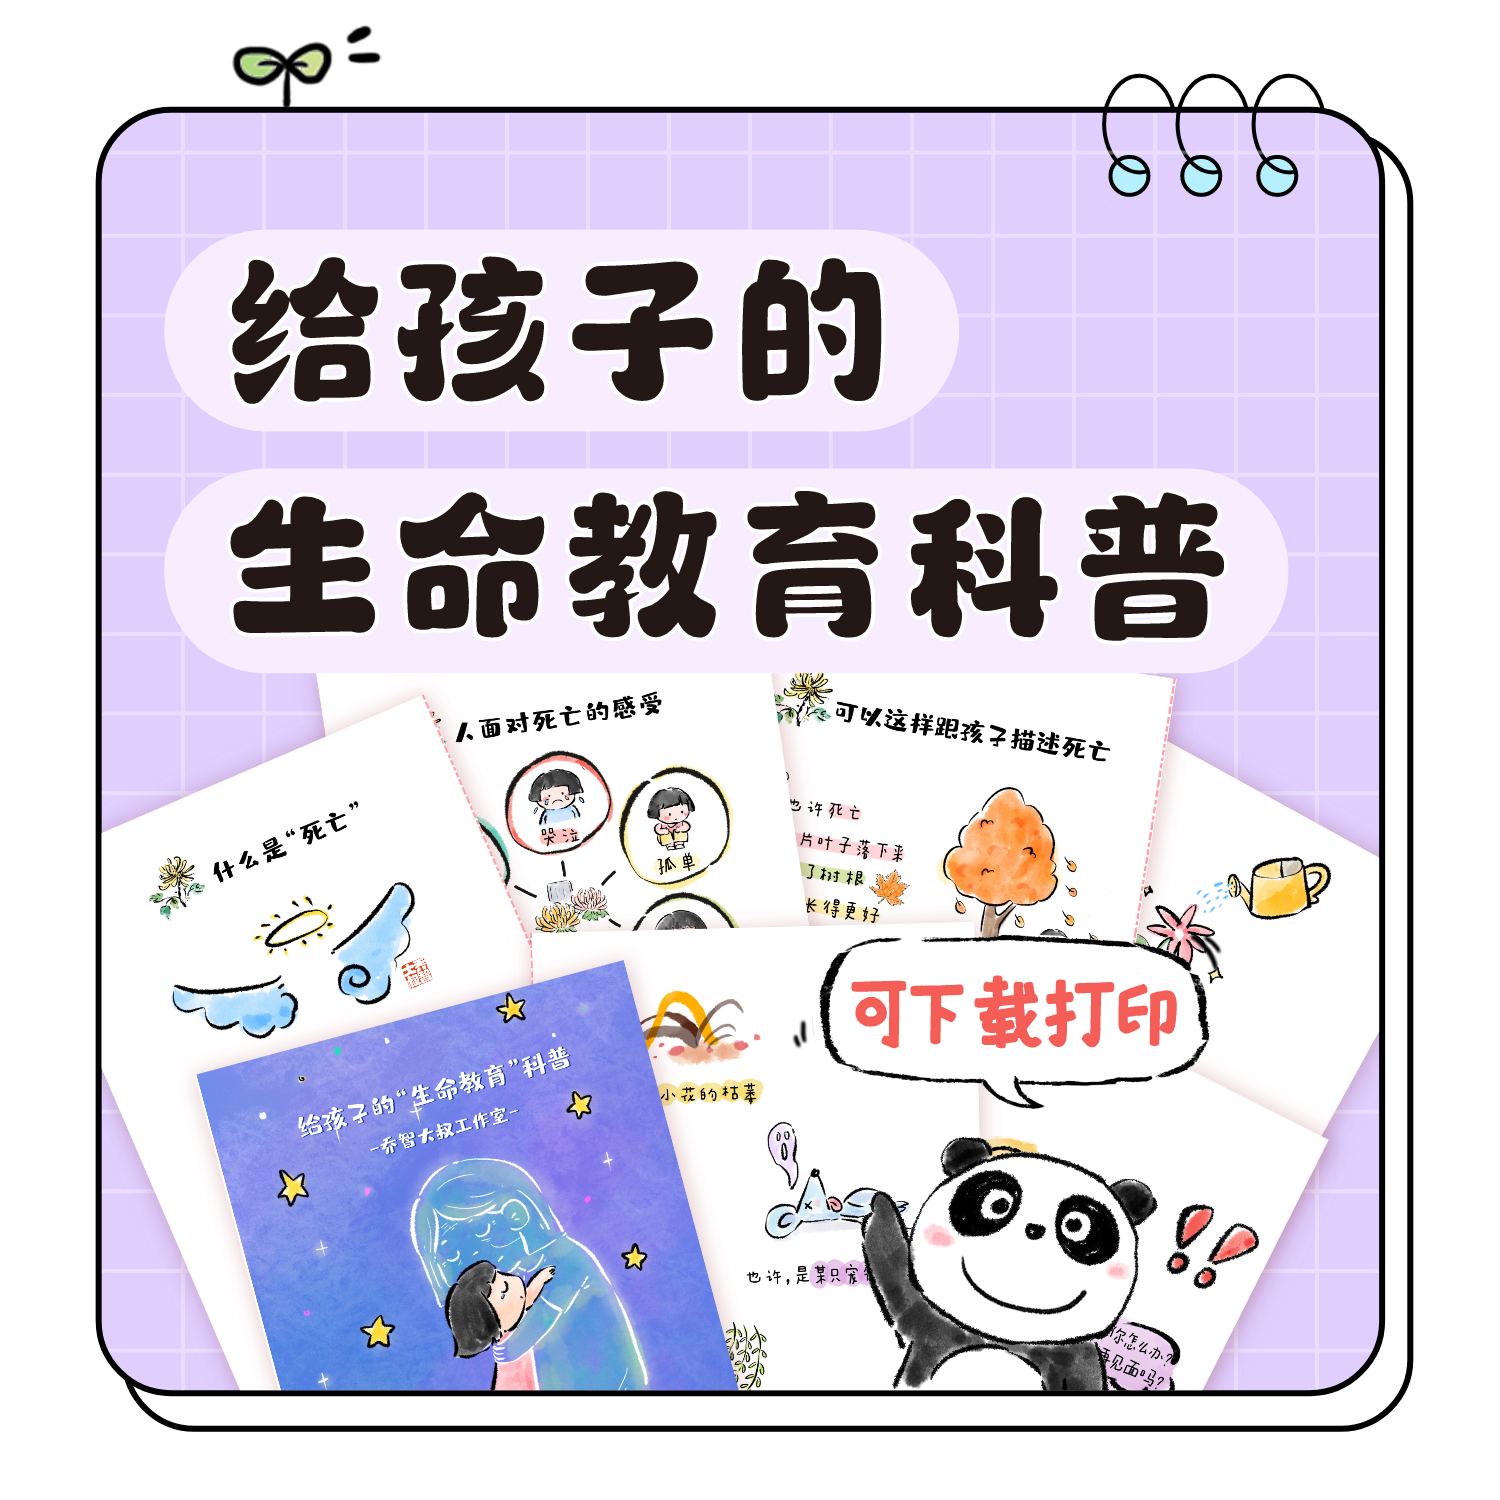 乔智大叔原创手绘——给孩子的生命教育科普PDF电子版